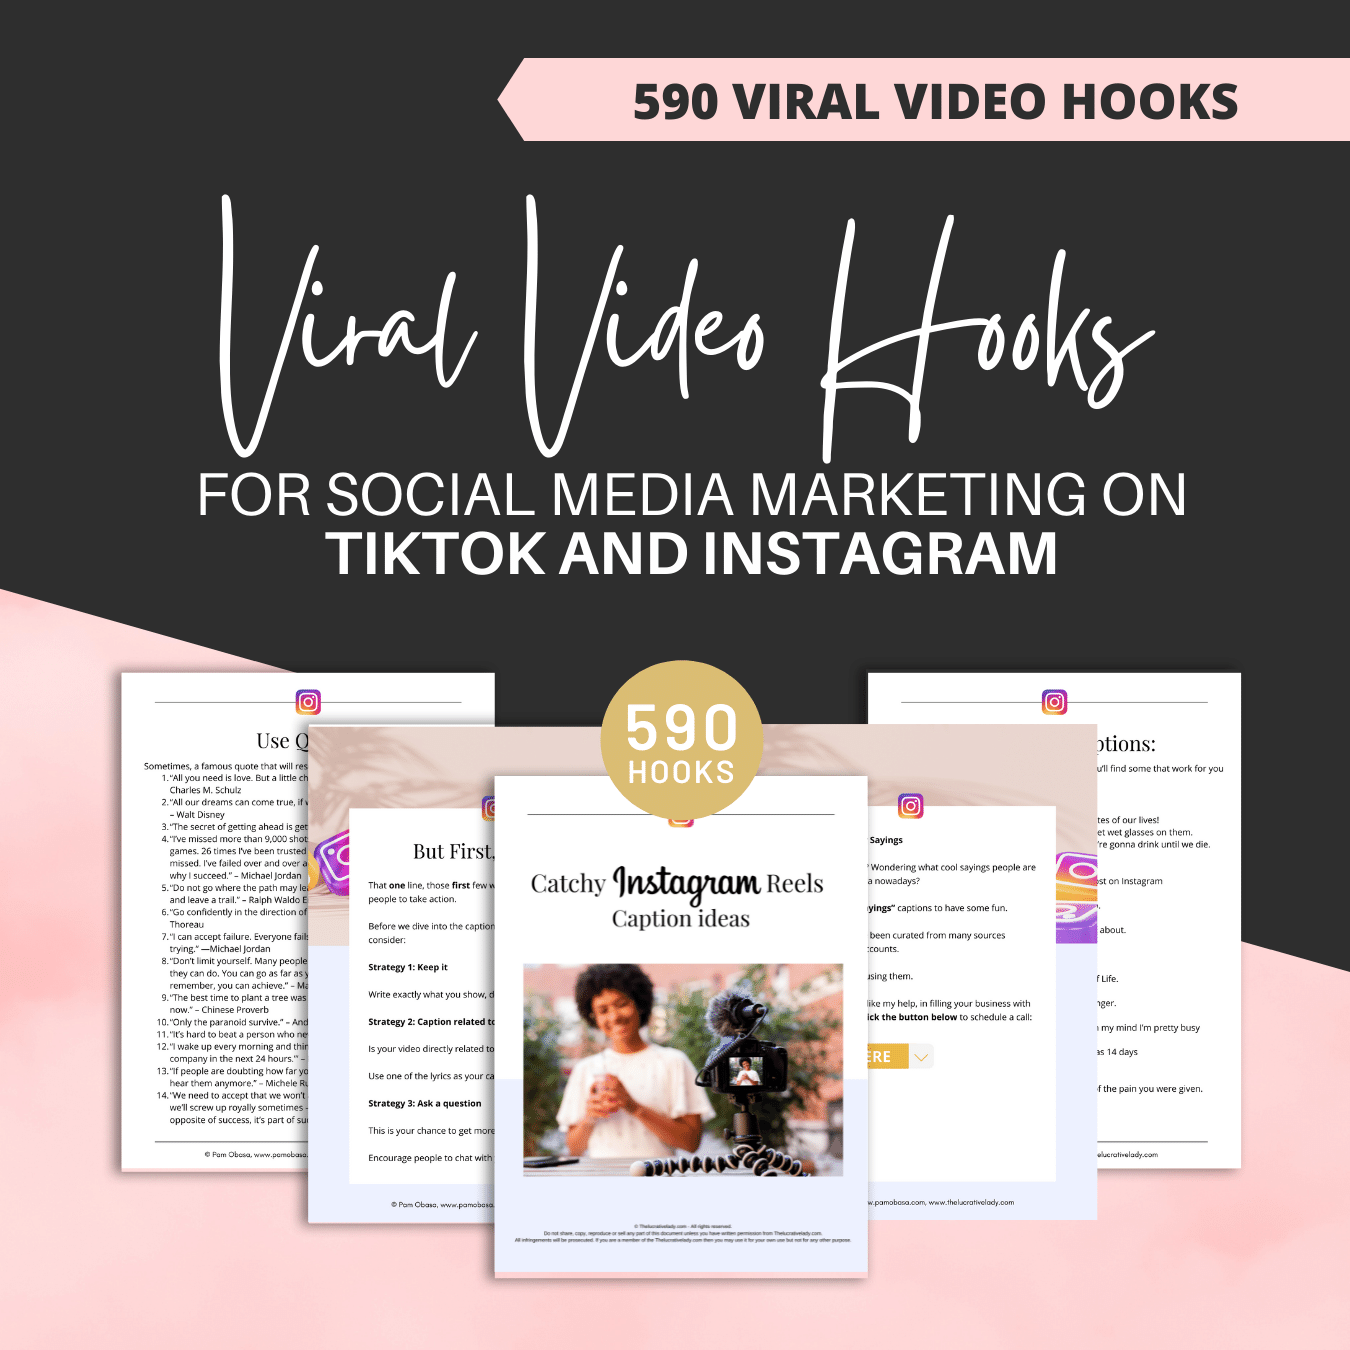 590 Viral Video Hooks for social media marketing on TikTok and Instagram